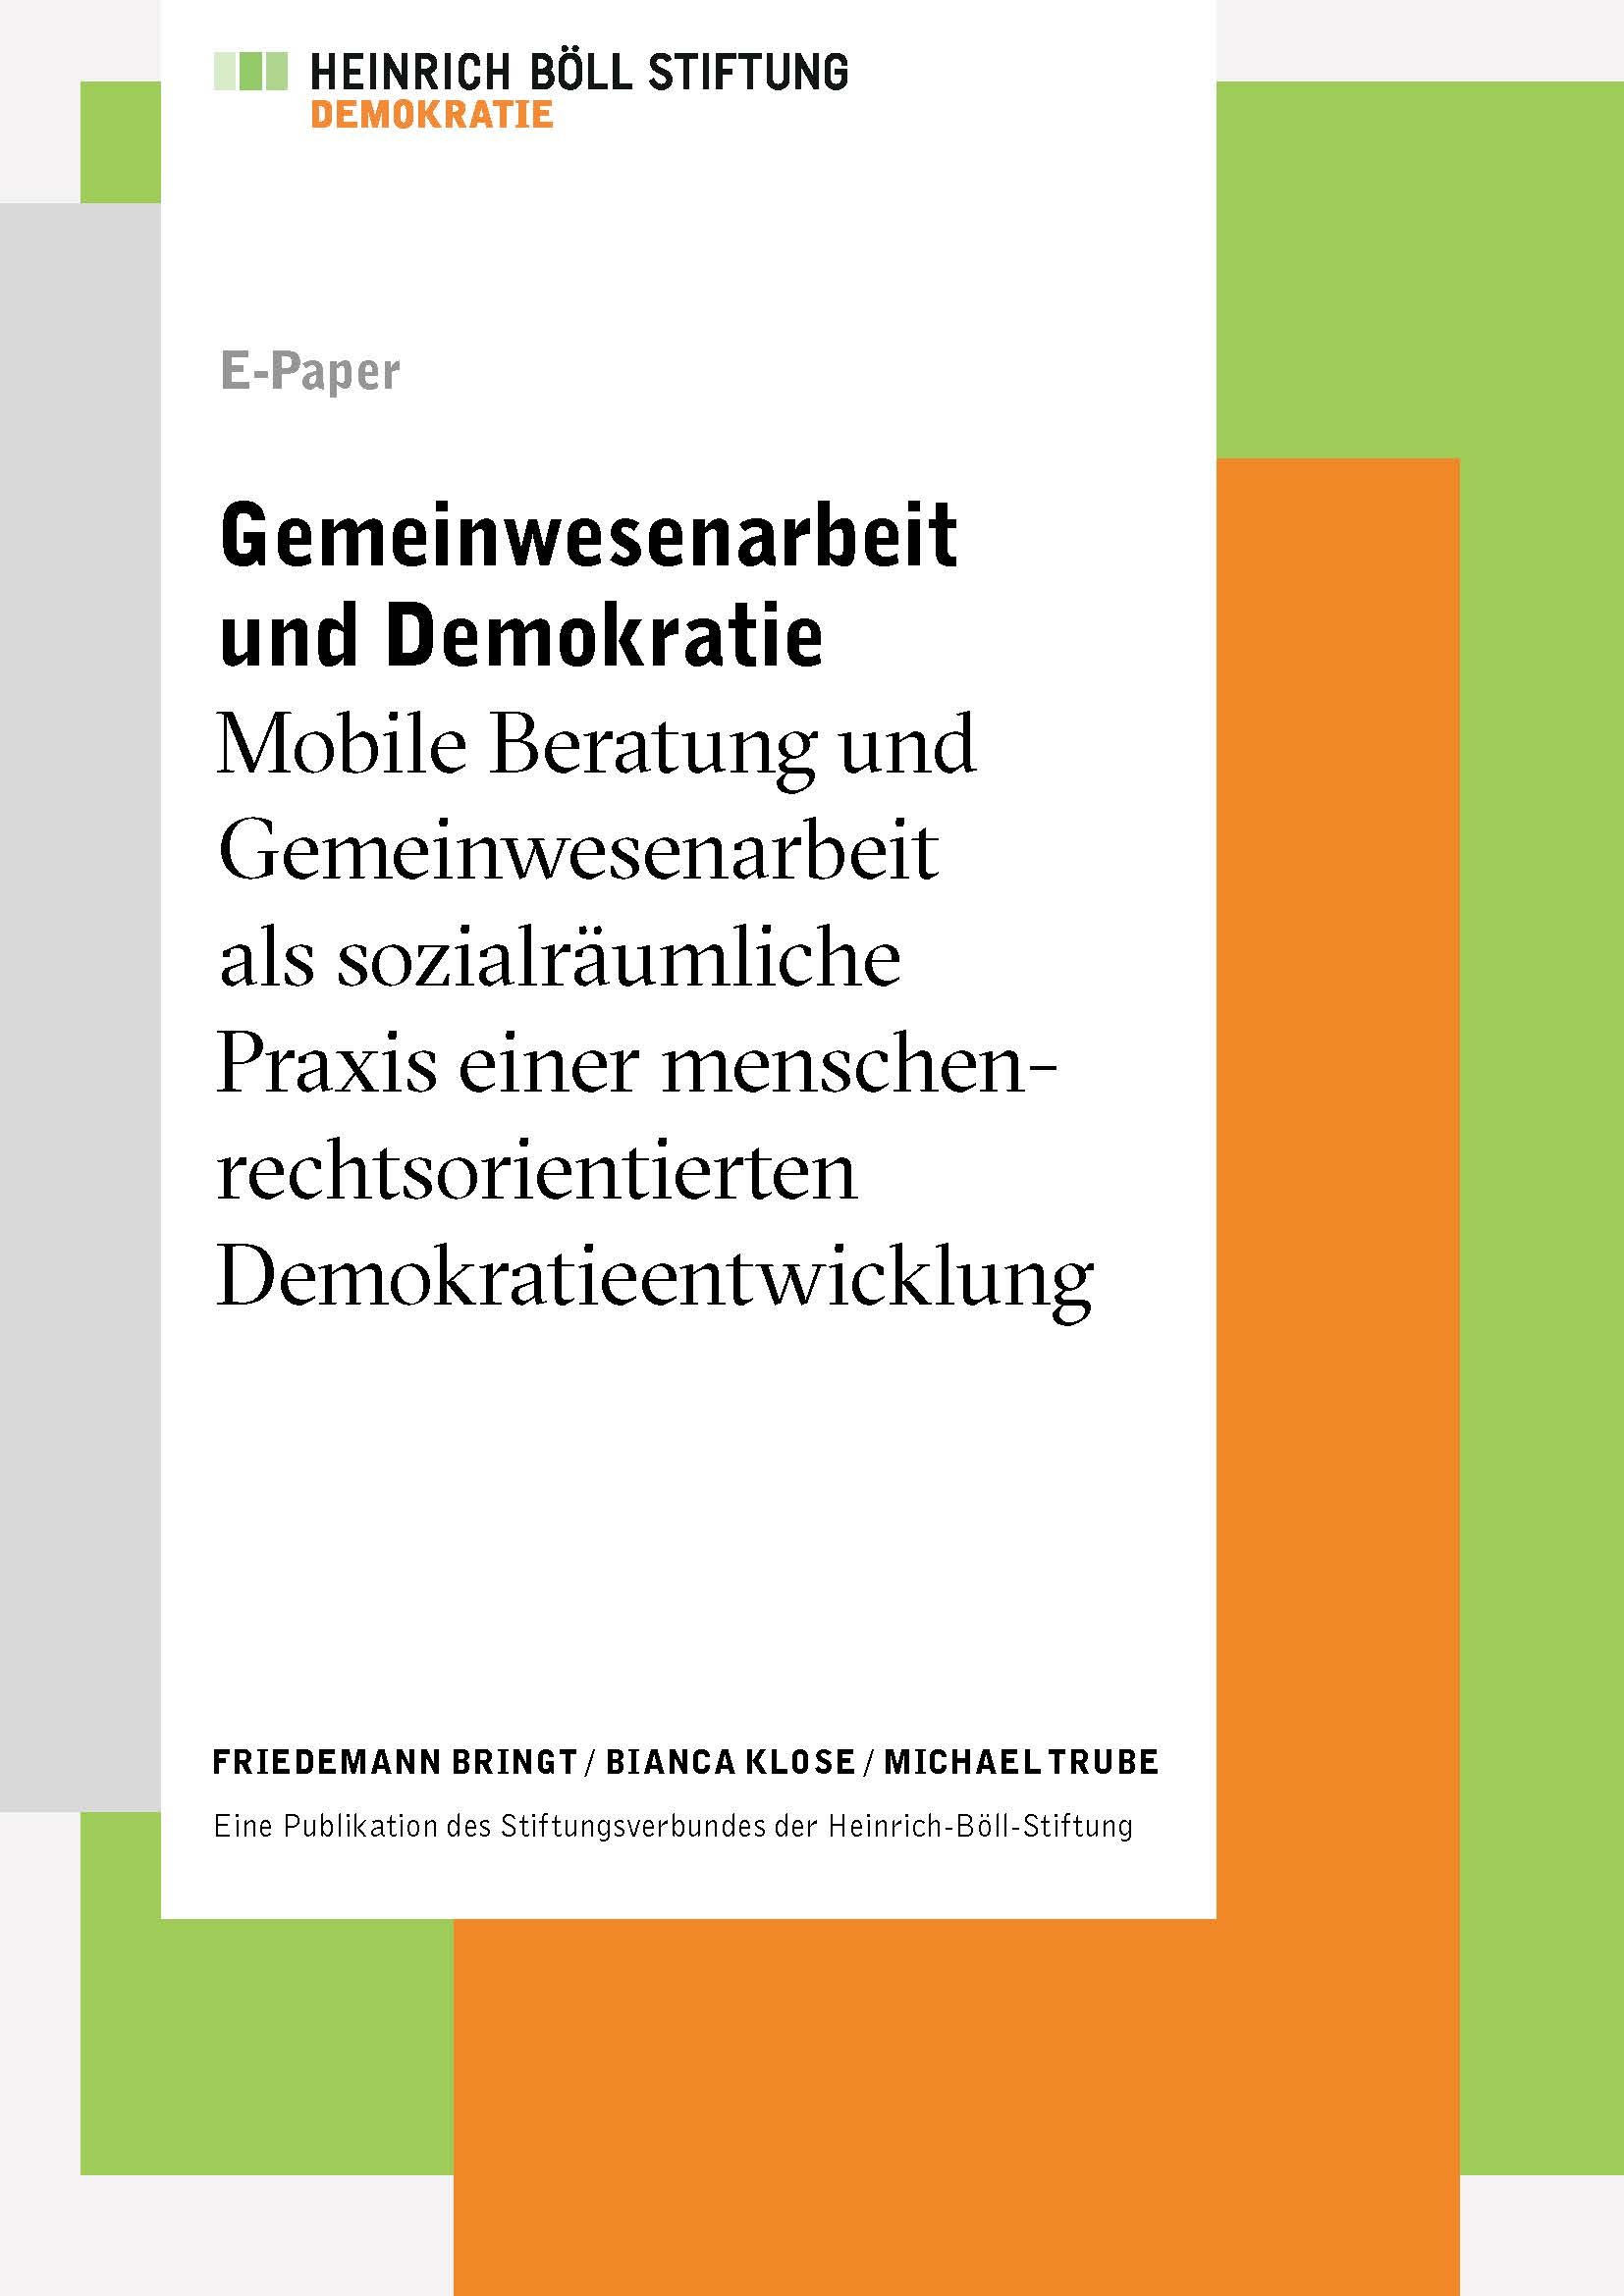 Gemeinwesenarbeit und Demokratie. Mobile Beratung und Gemeinwesenarbeit als sozialräumliche Praxis einer menschenrechtsorientierten Demokratieentwicklung (2014)